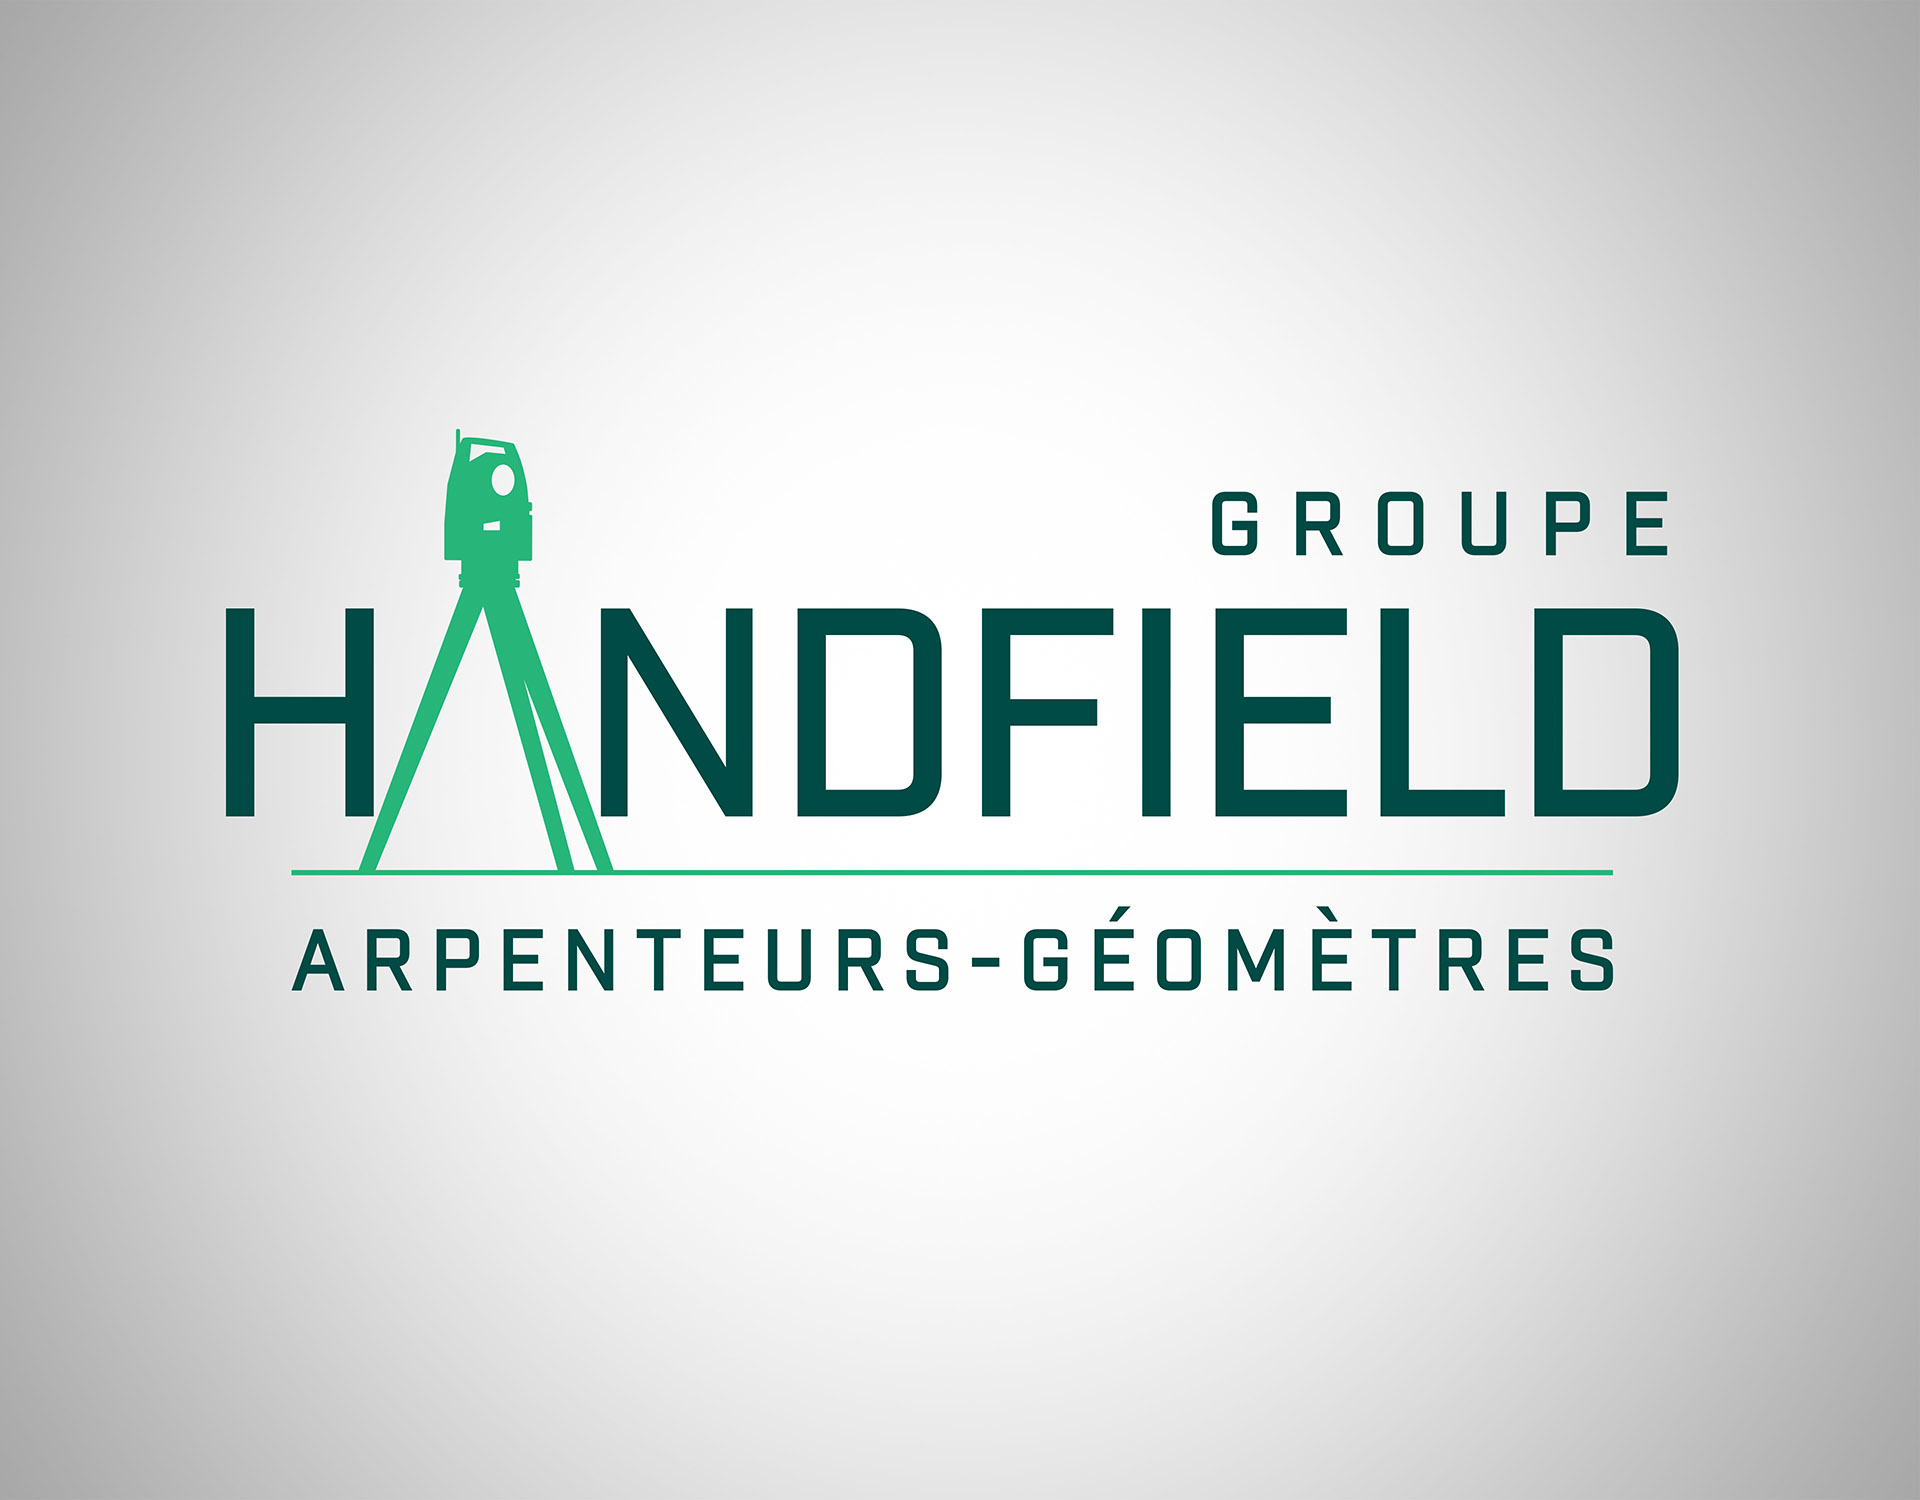 Groupe Handfield Arpenteurs-Géomètres Inc - Land Surveyors